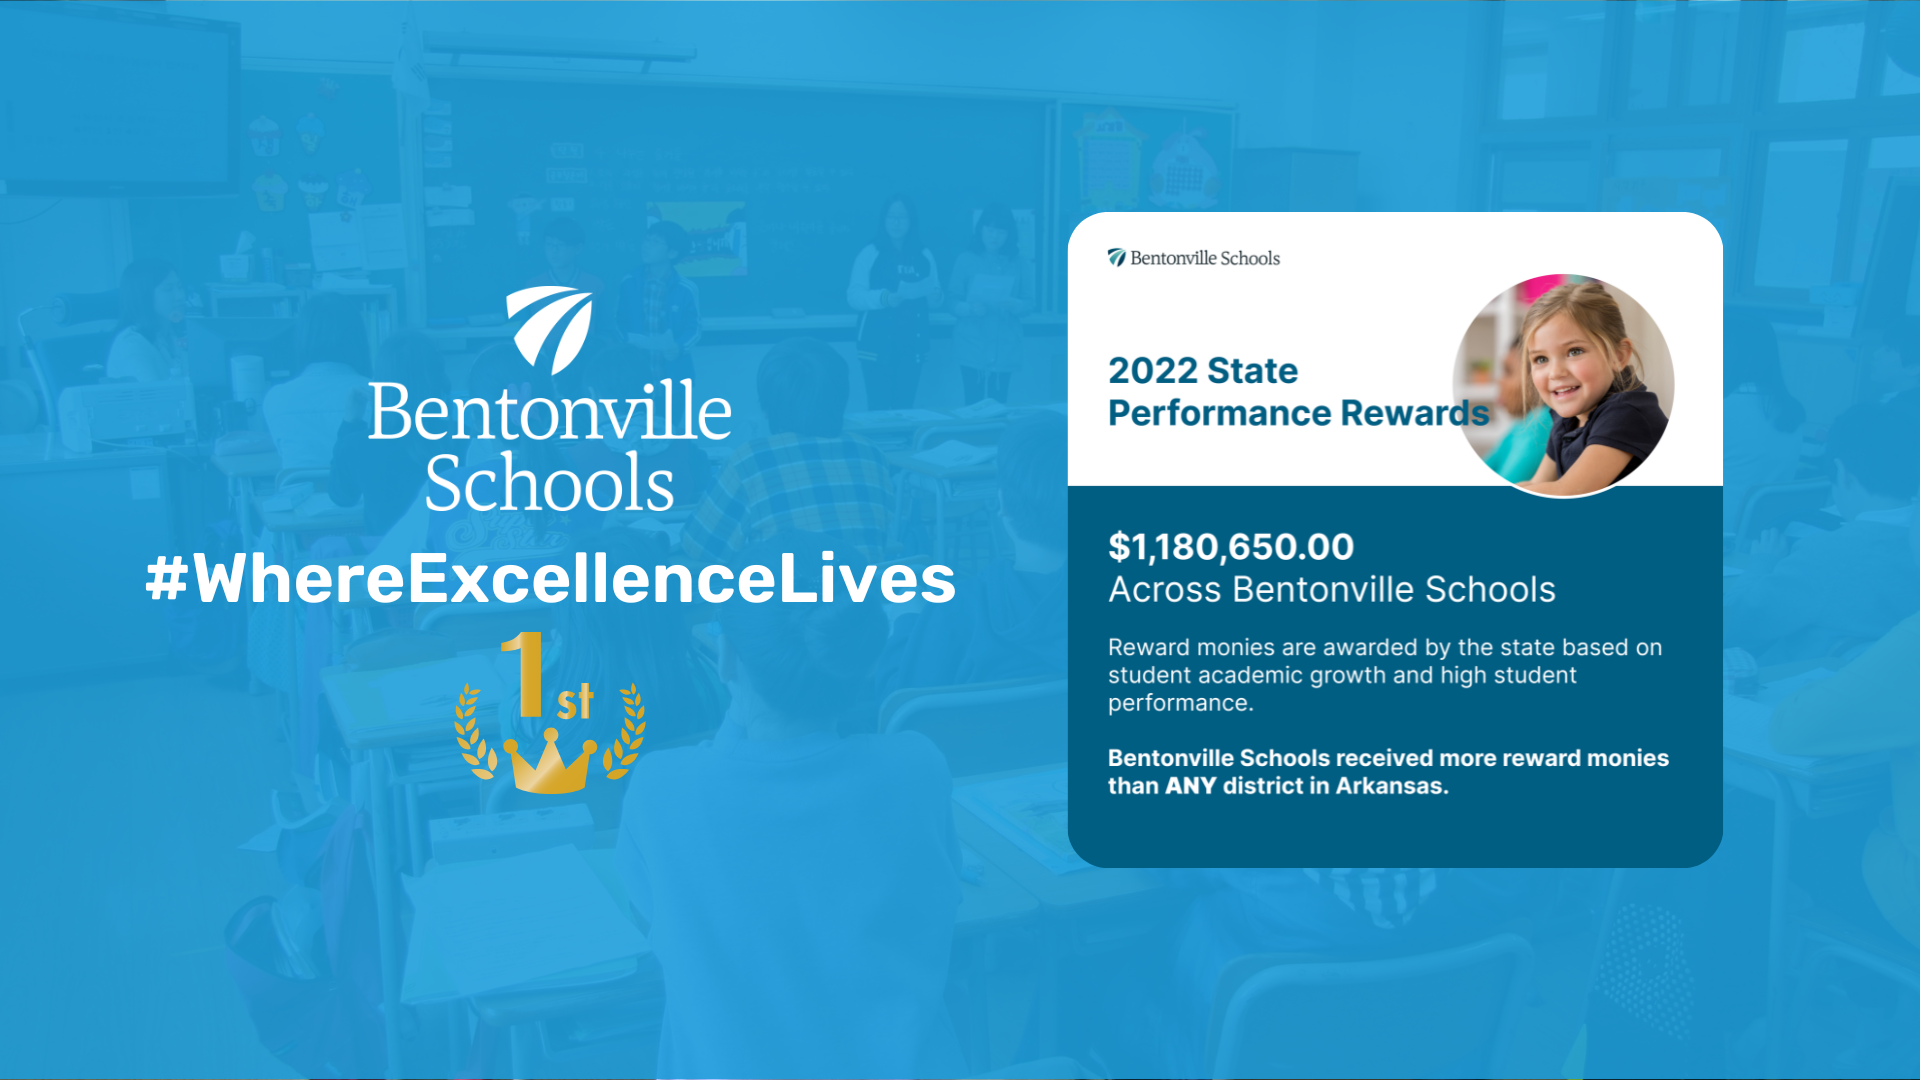 Bentonville Schools Rewards Money 